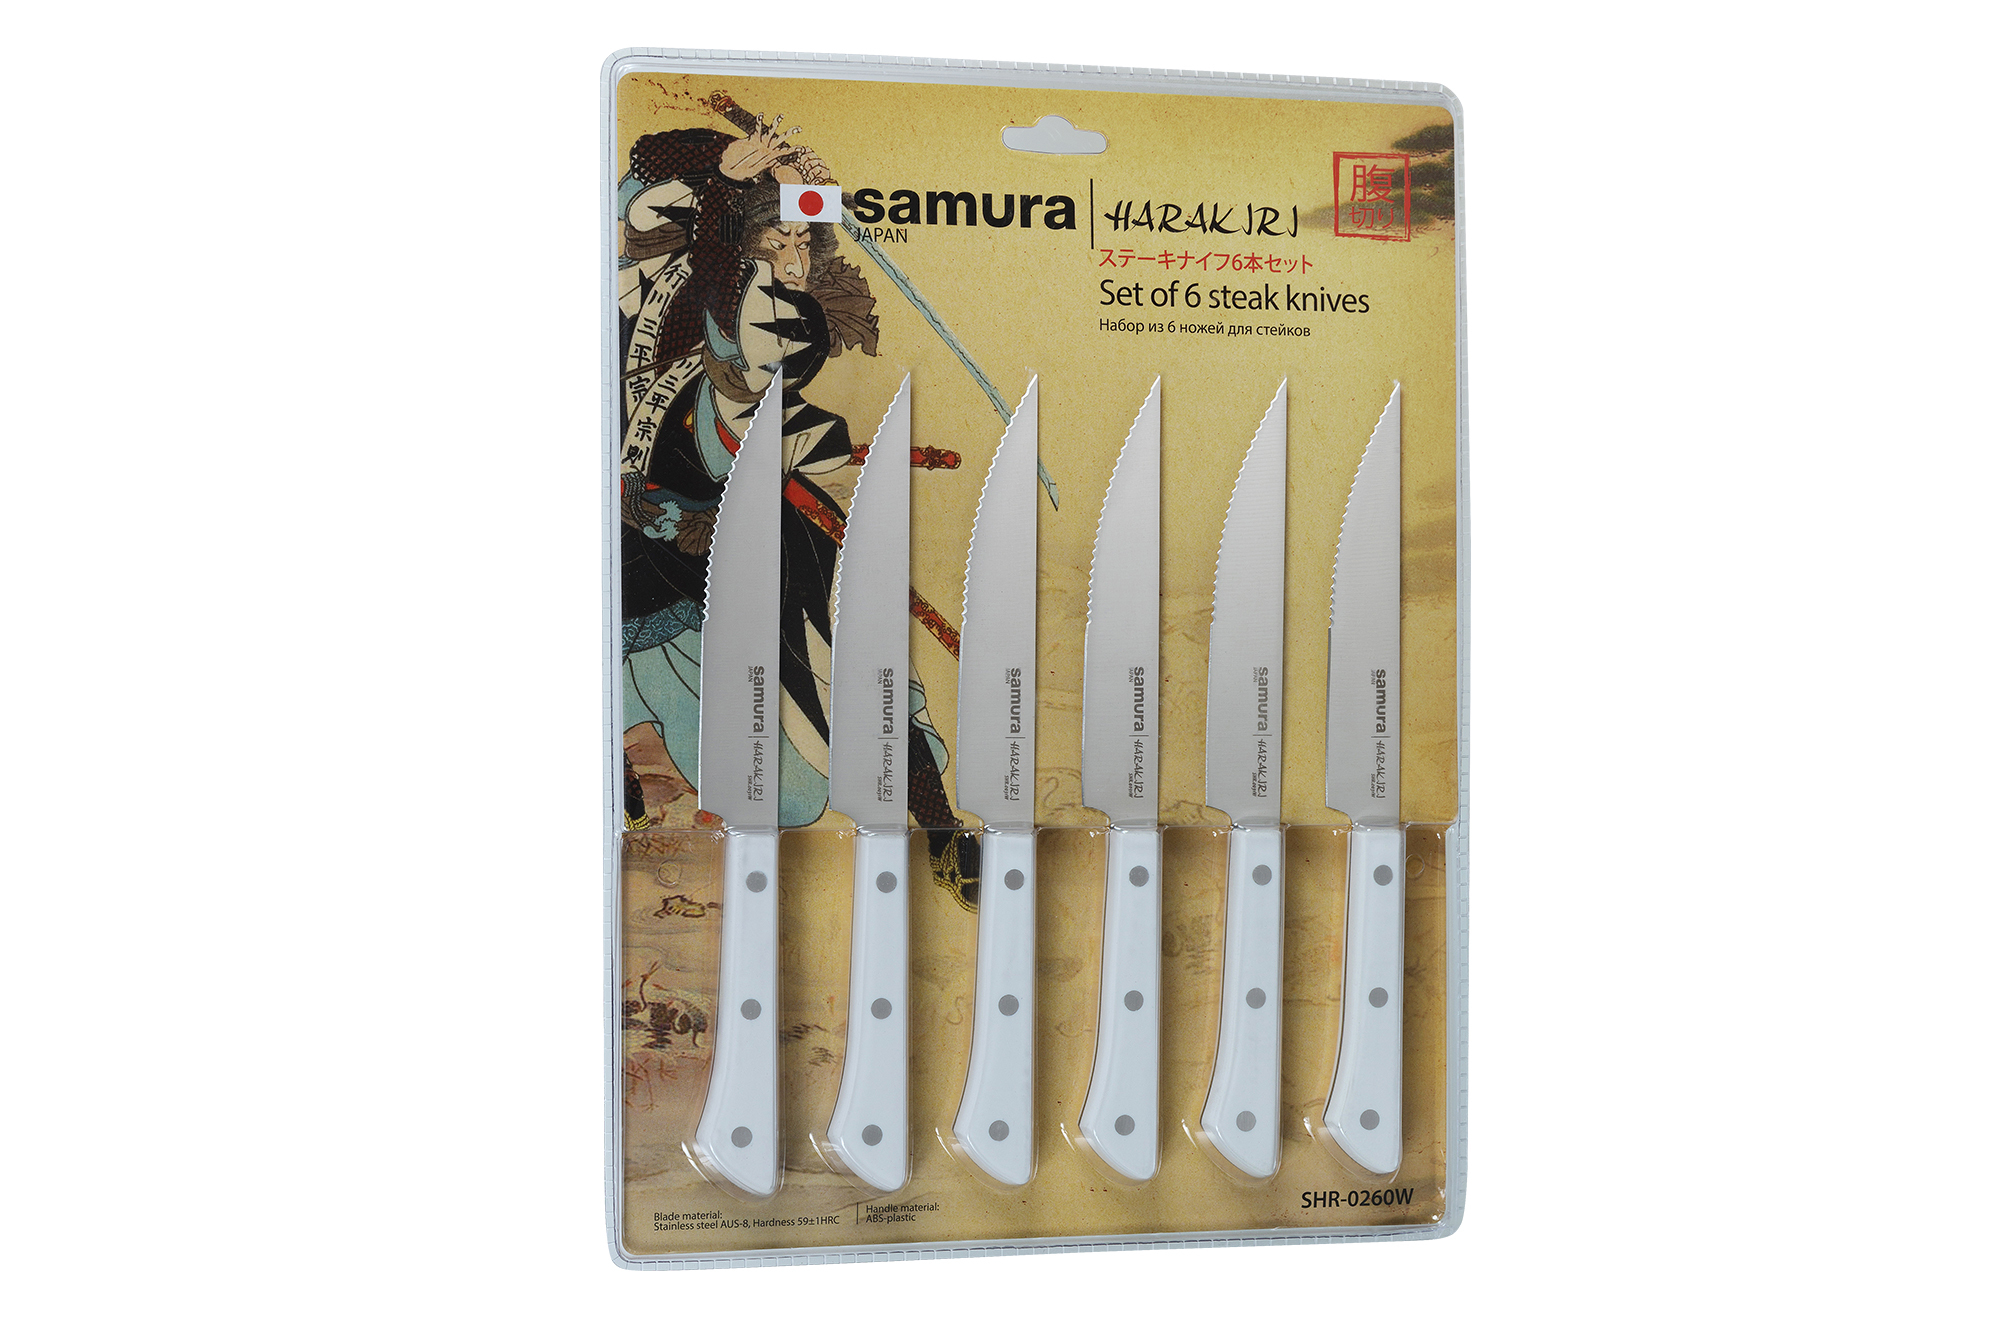 фото Набор кухонных ножей для стейка samura harakiri, сталь aus-8, рукоять пластик